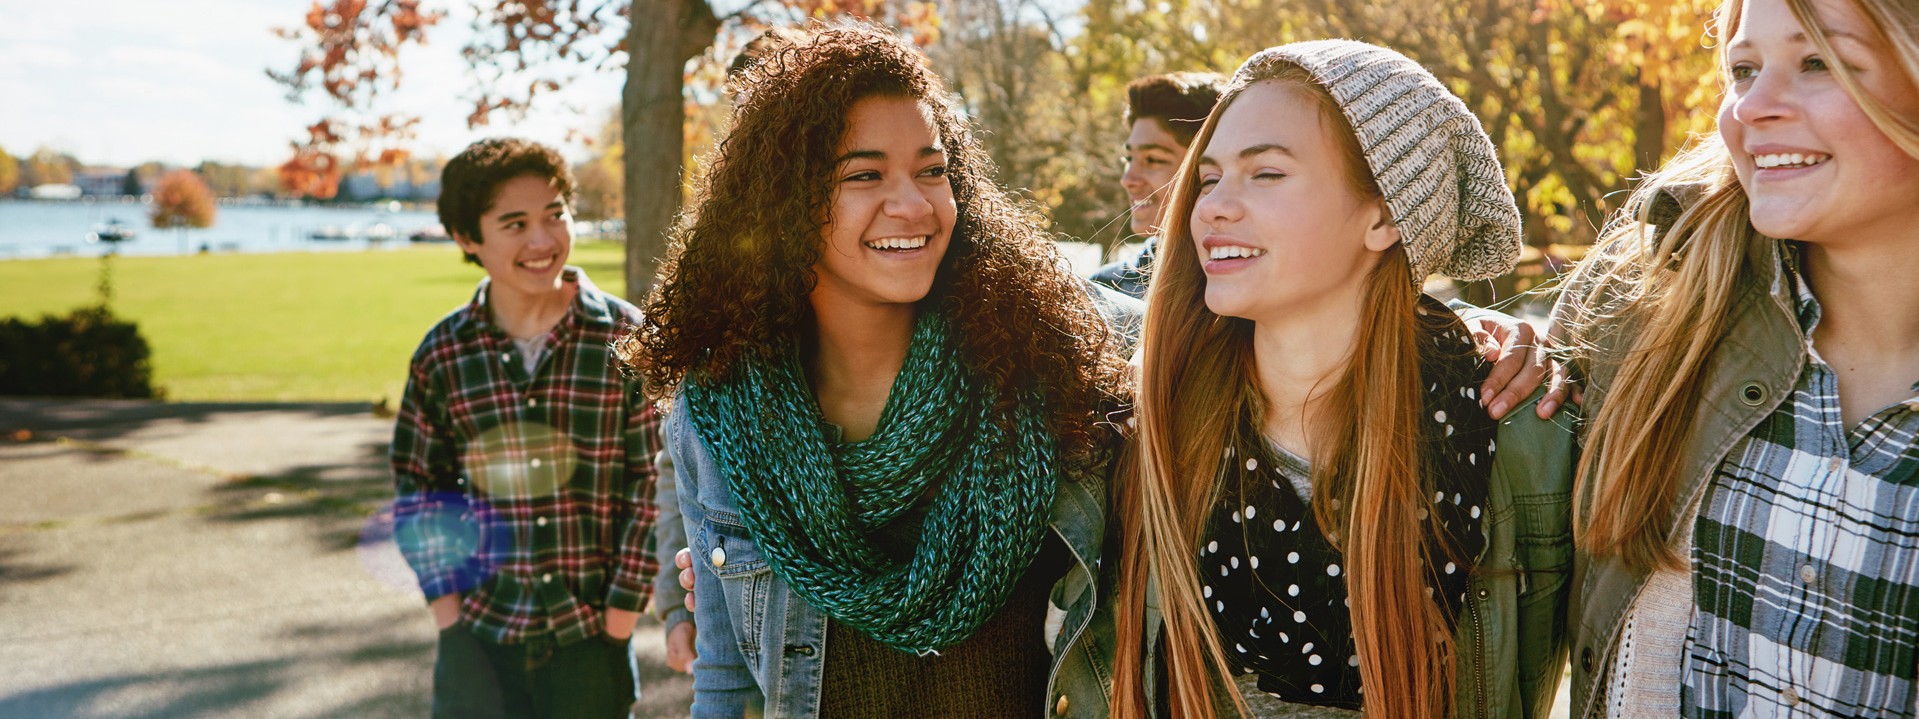 Eine Gruppe von 5 Teenagern fröhlich lächelnd in der Herbstsonne.